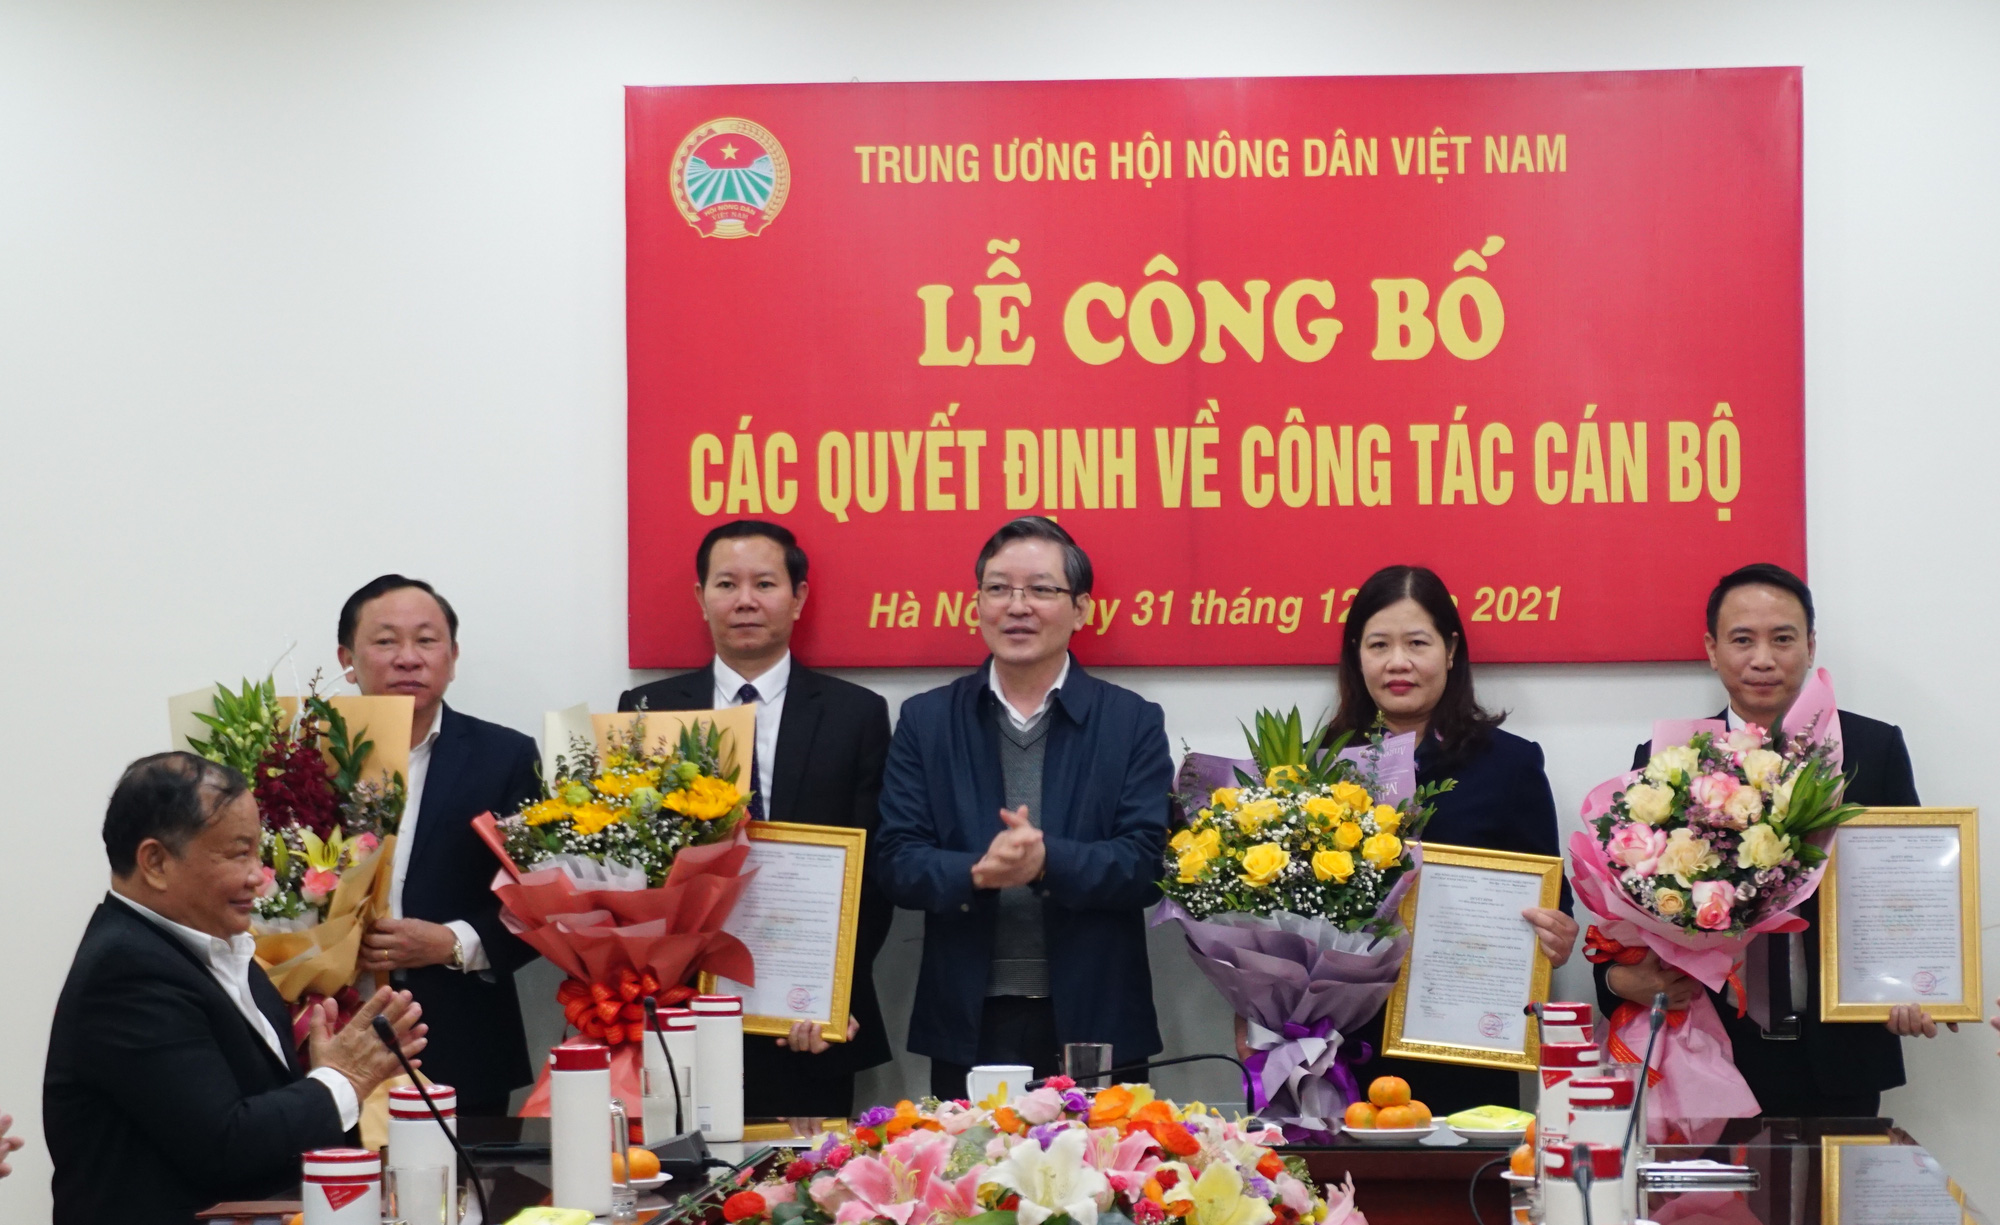 Trung ương Hội Nông dân Việt Nam: Trao Quyết định về công tác cán bộ cho 4 đồng chí - Ảnh 1.